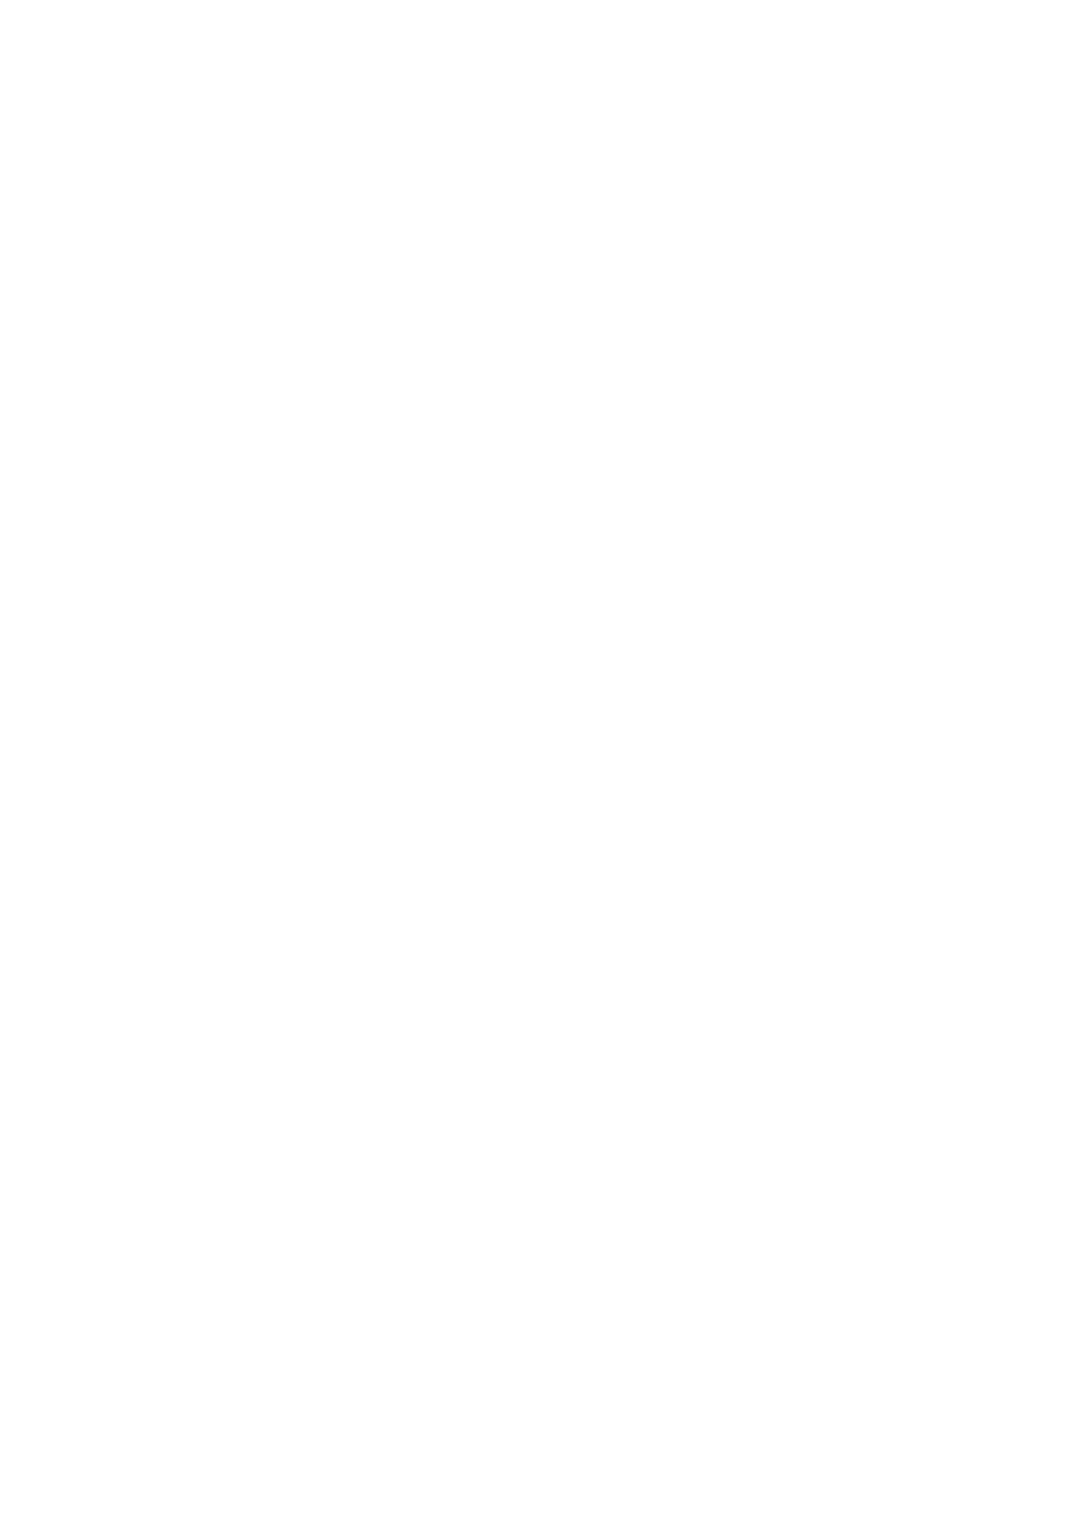 Beazley logo for dark backgrounds (transparent PNG)